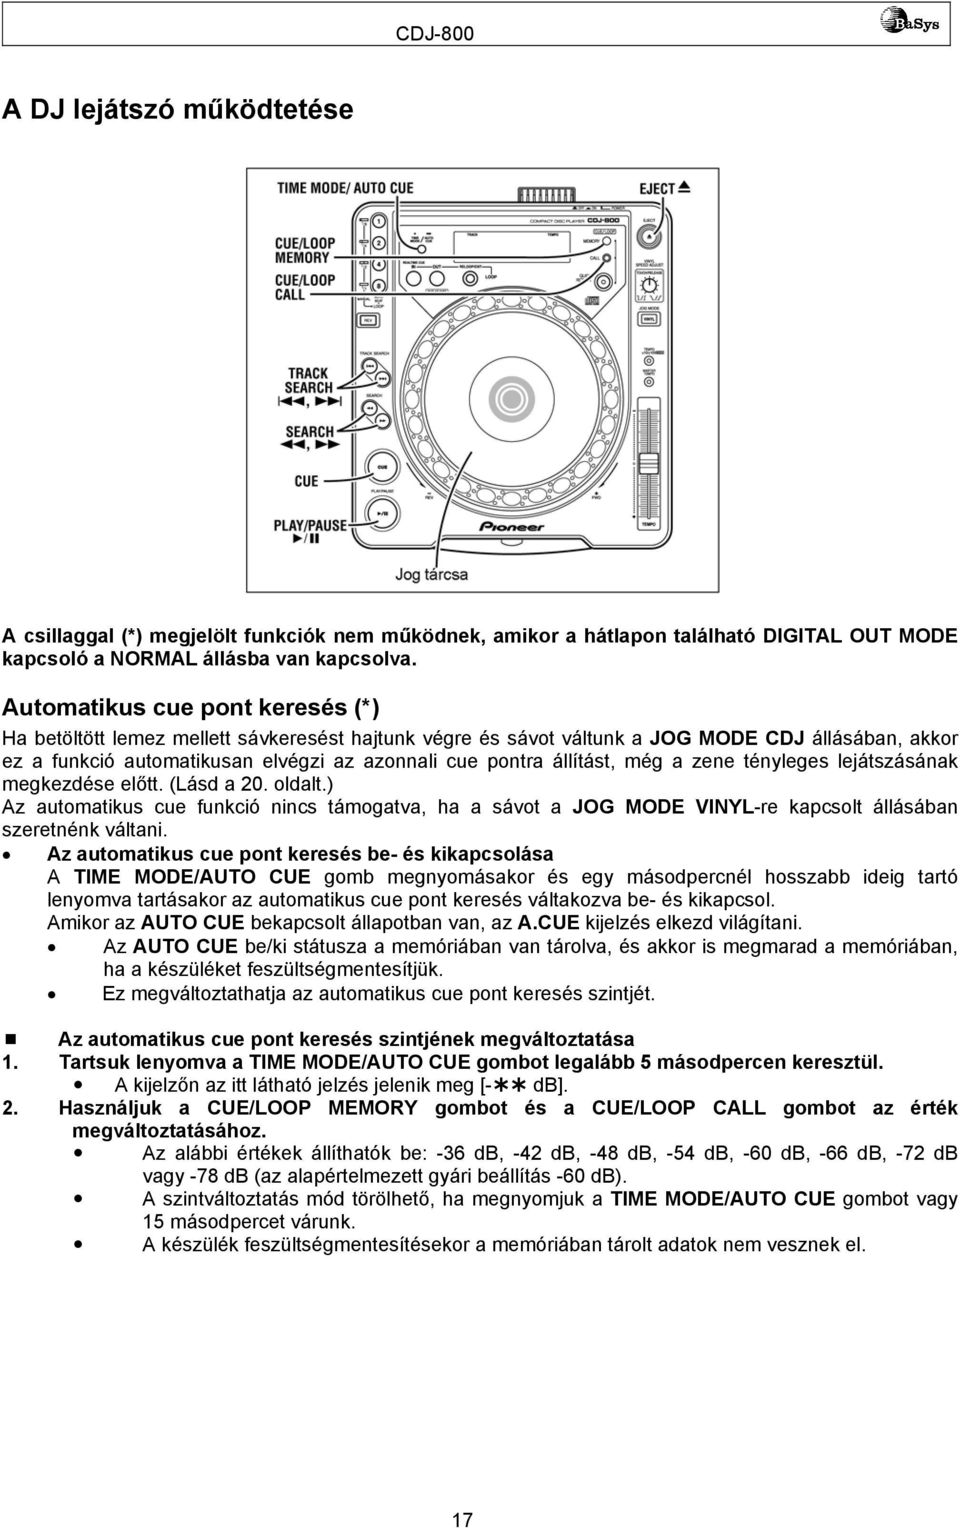 CDJ-800. CD-lejátszó. Használati útmutató - PDF Ingyenes letöltés